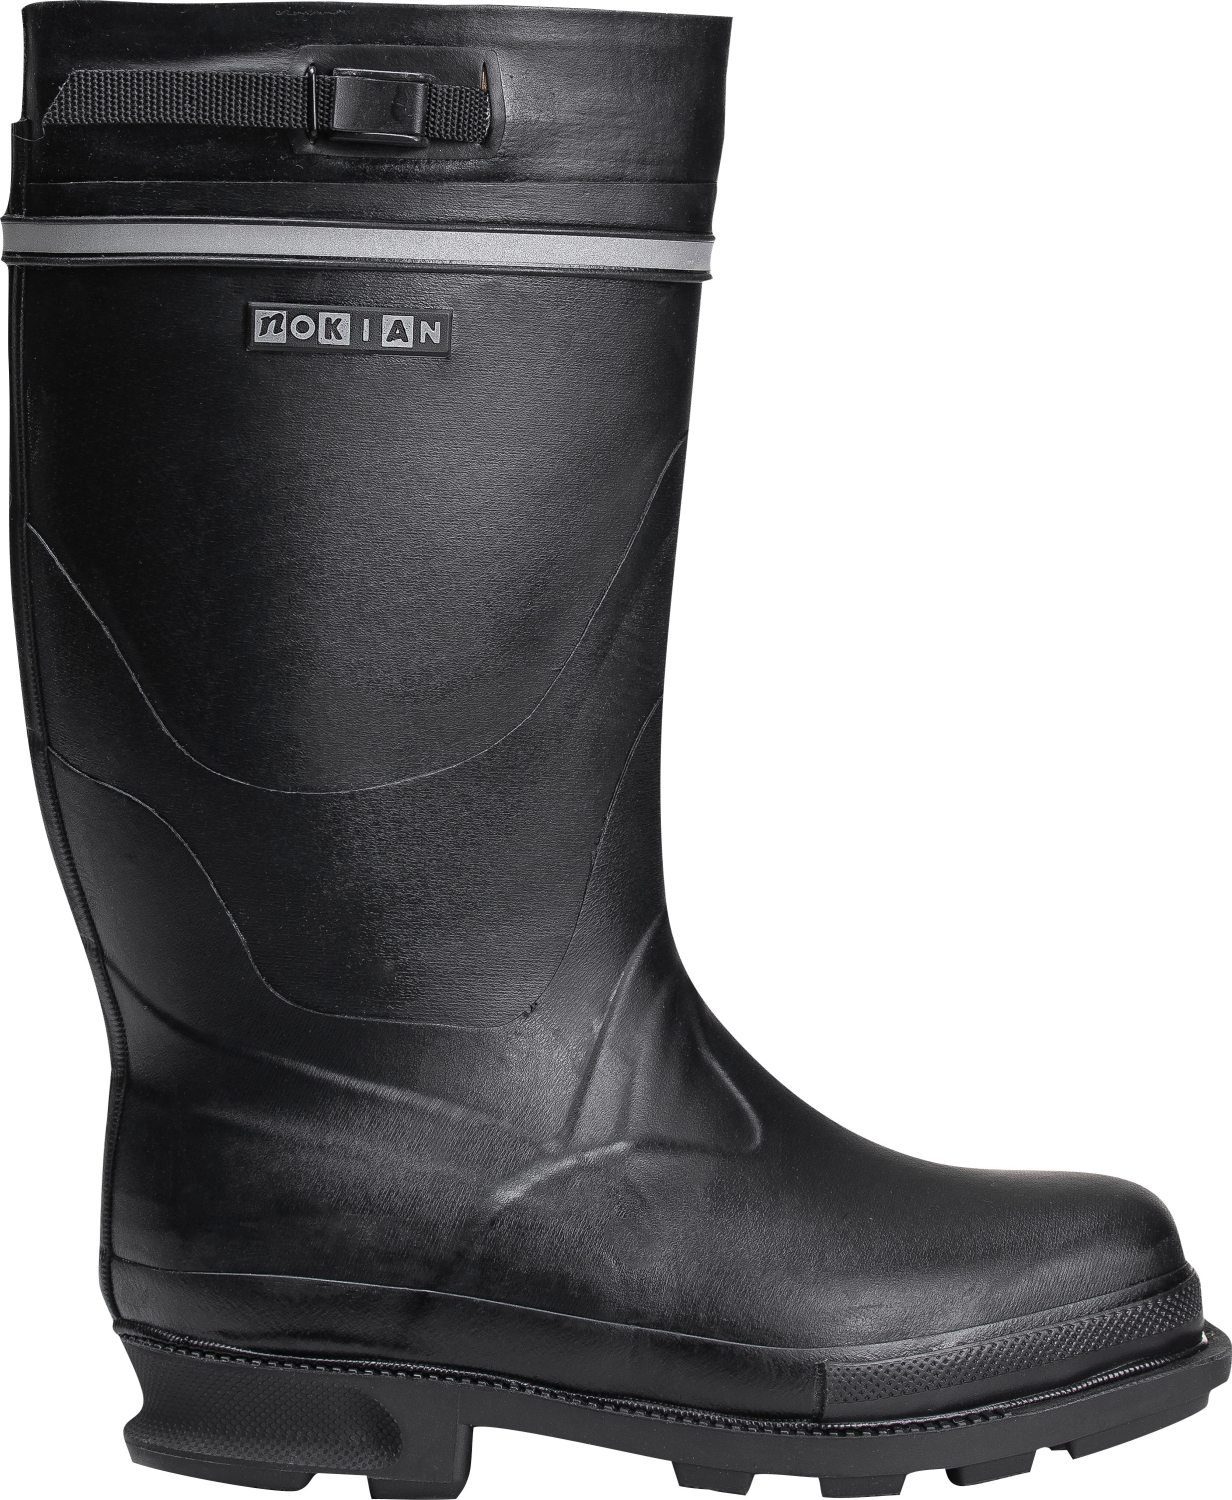 Nokian Footwear Hochleistungsgummistiefel für kaltes Naali Wetter Gummistiefel schwarz